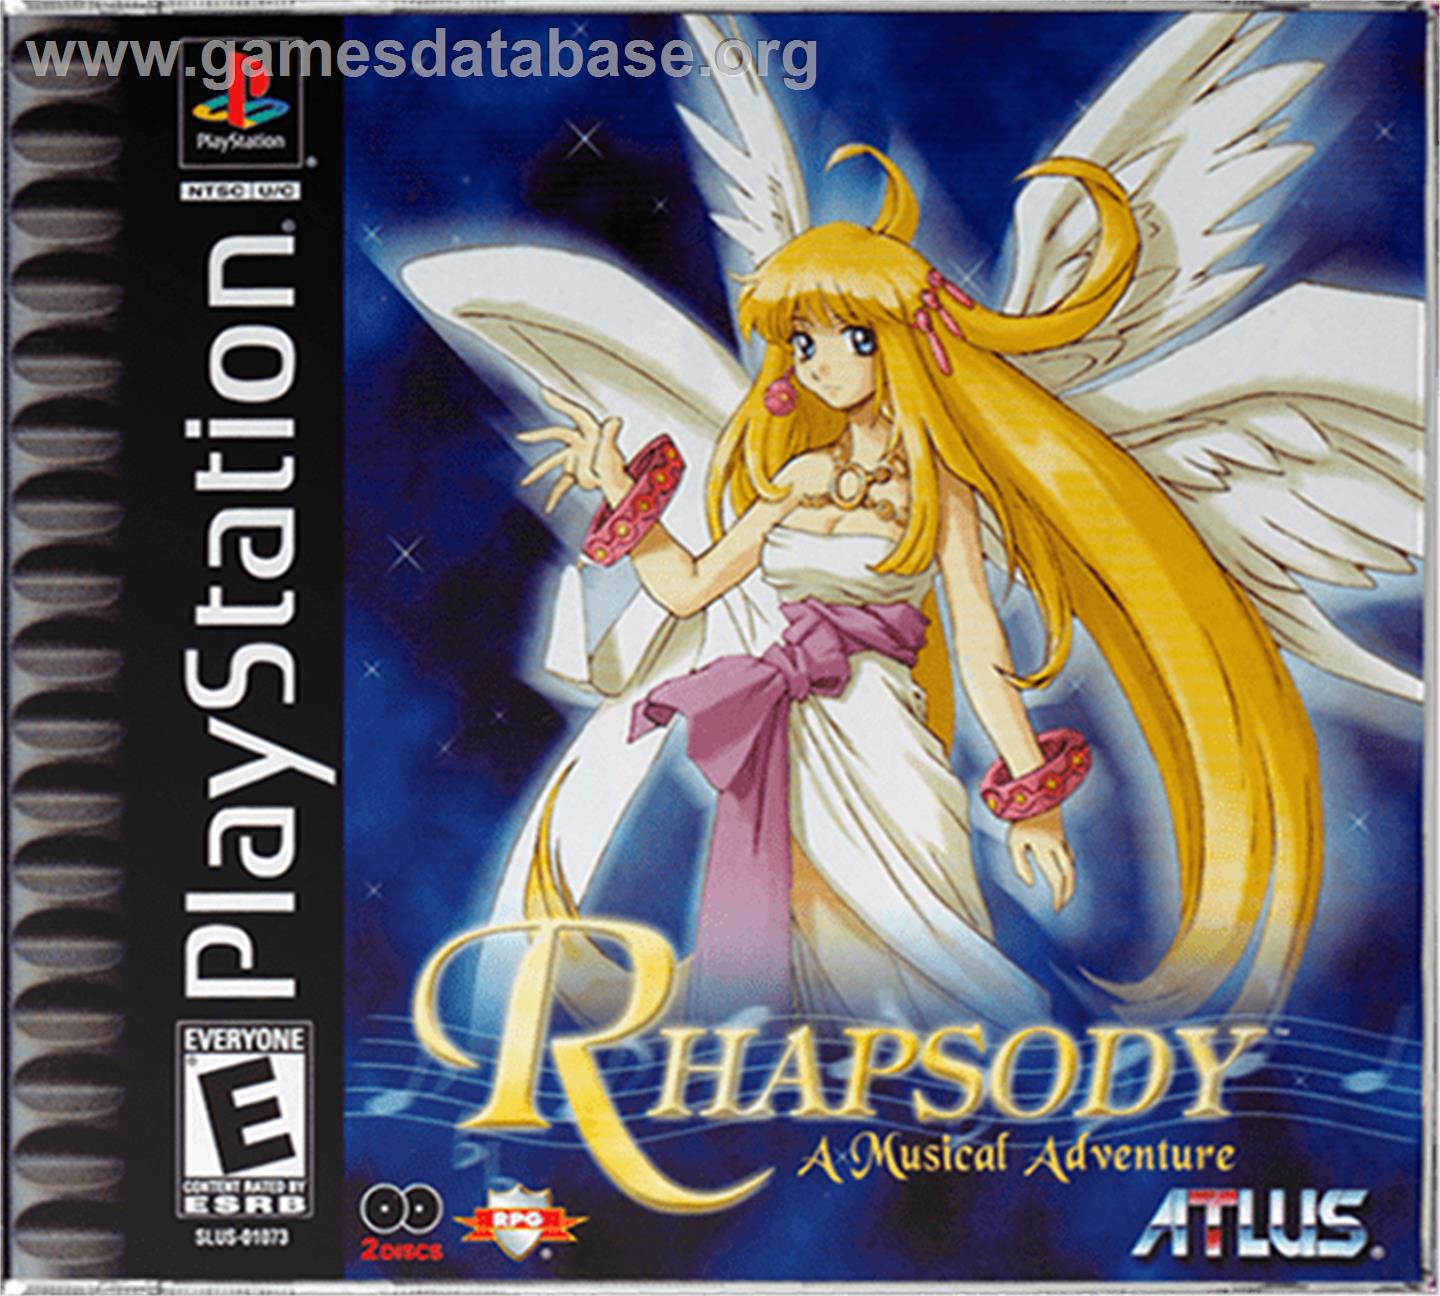 Rhapsody: A Musical Adventure - Sony Playstation - Artwork - Box